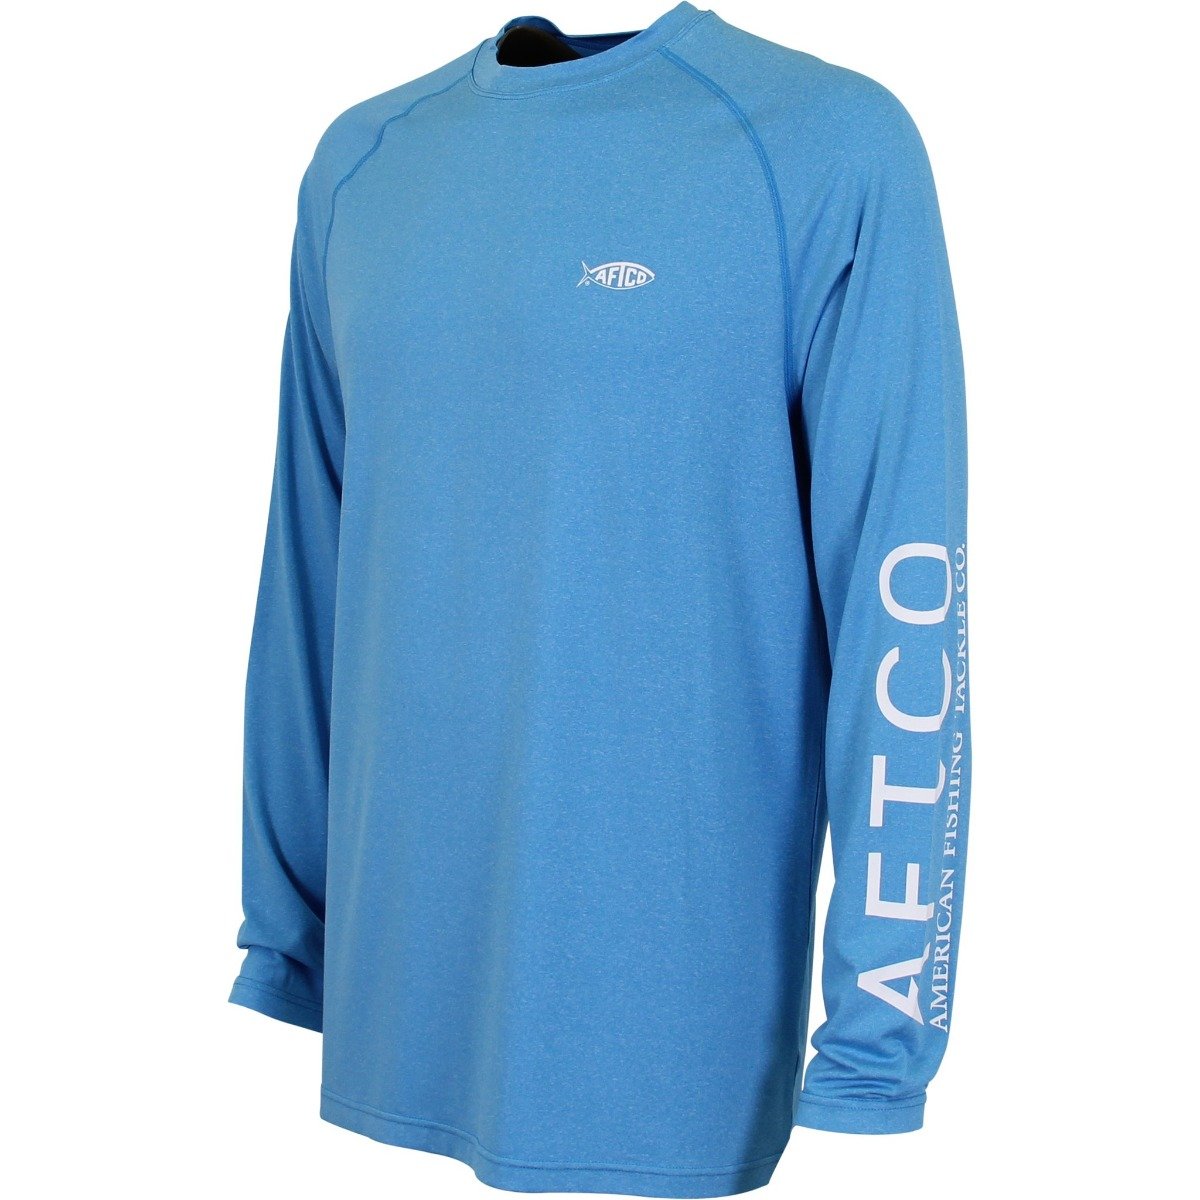 DAIWA Outdoor Long Sleeve Fishing Jersey / Shirt, Sports Equipment